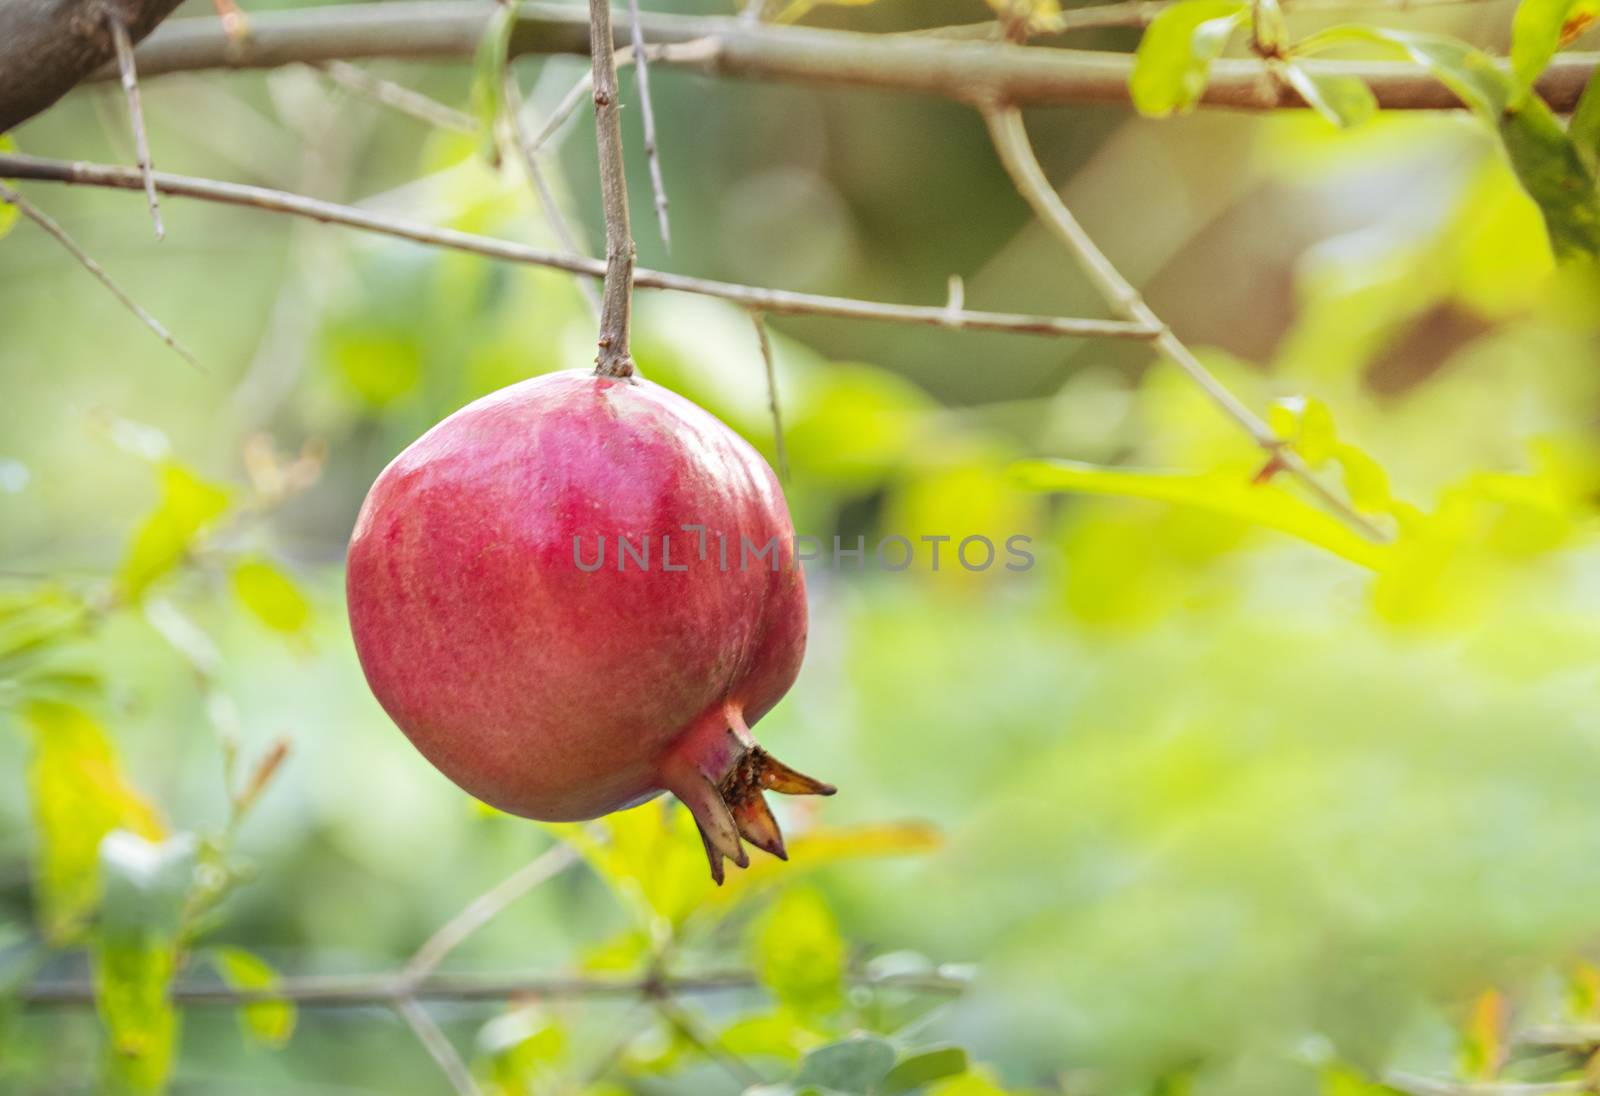 Pomegranate Fruit on Tree Branch by rakratchada